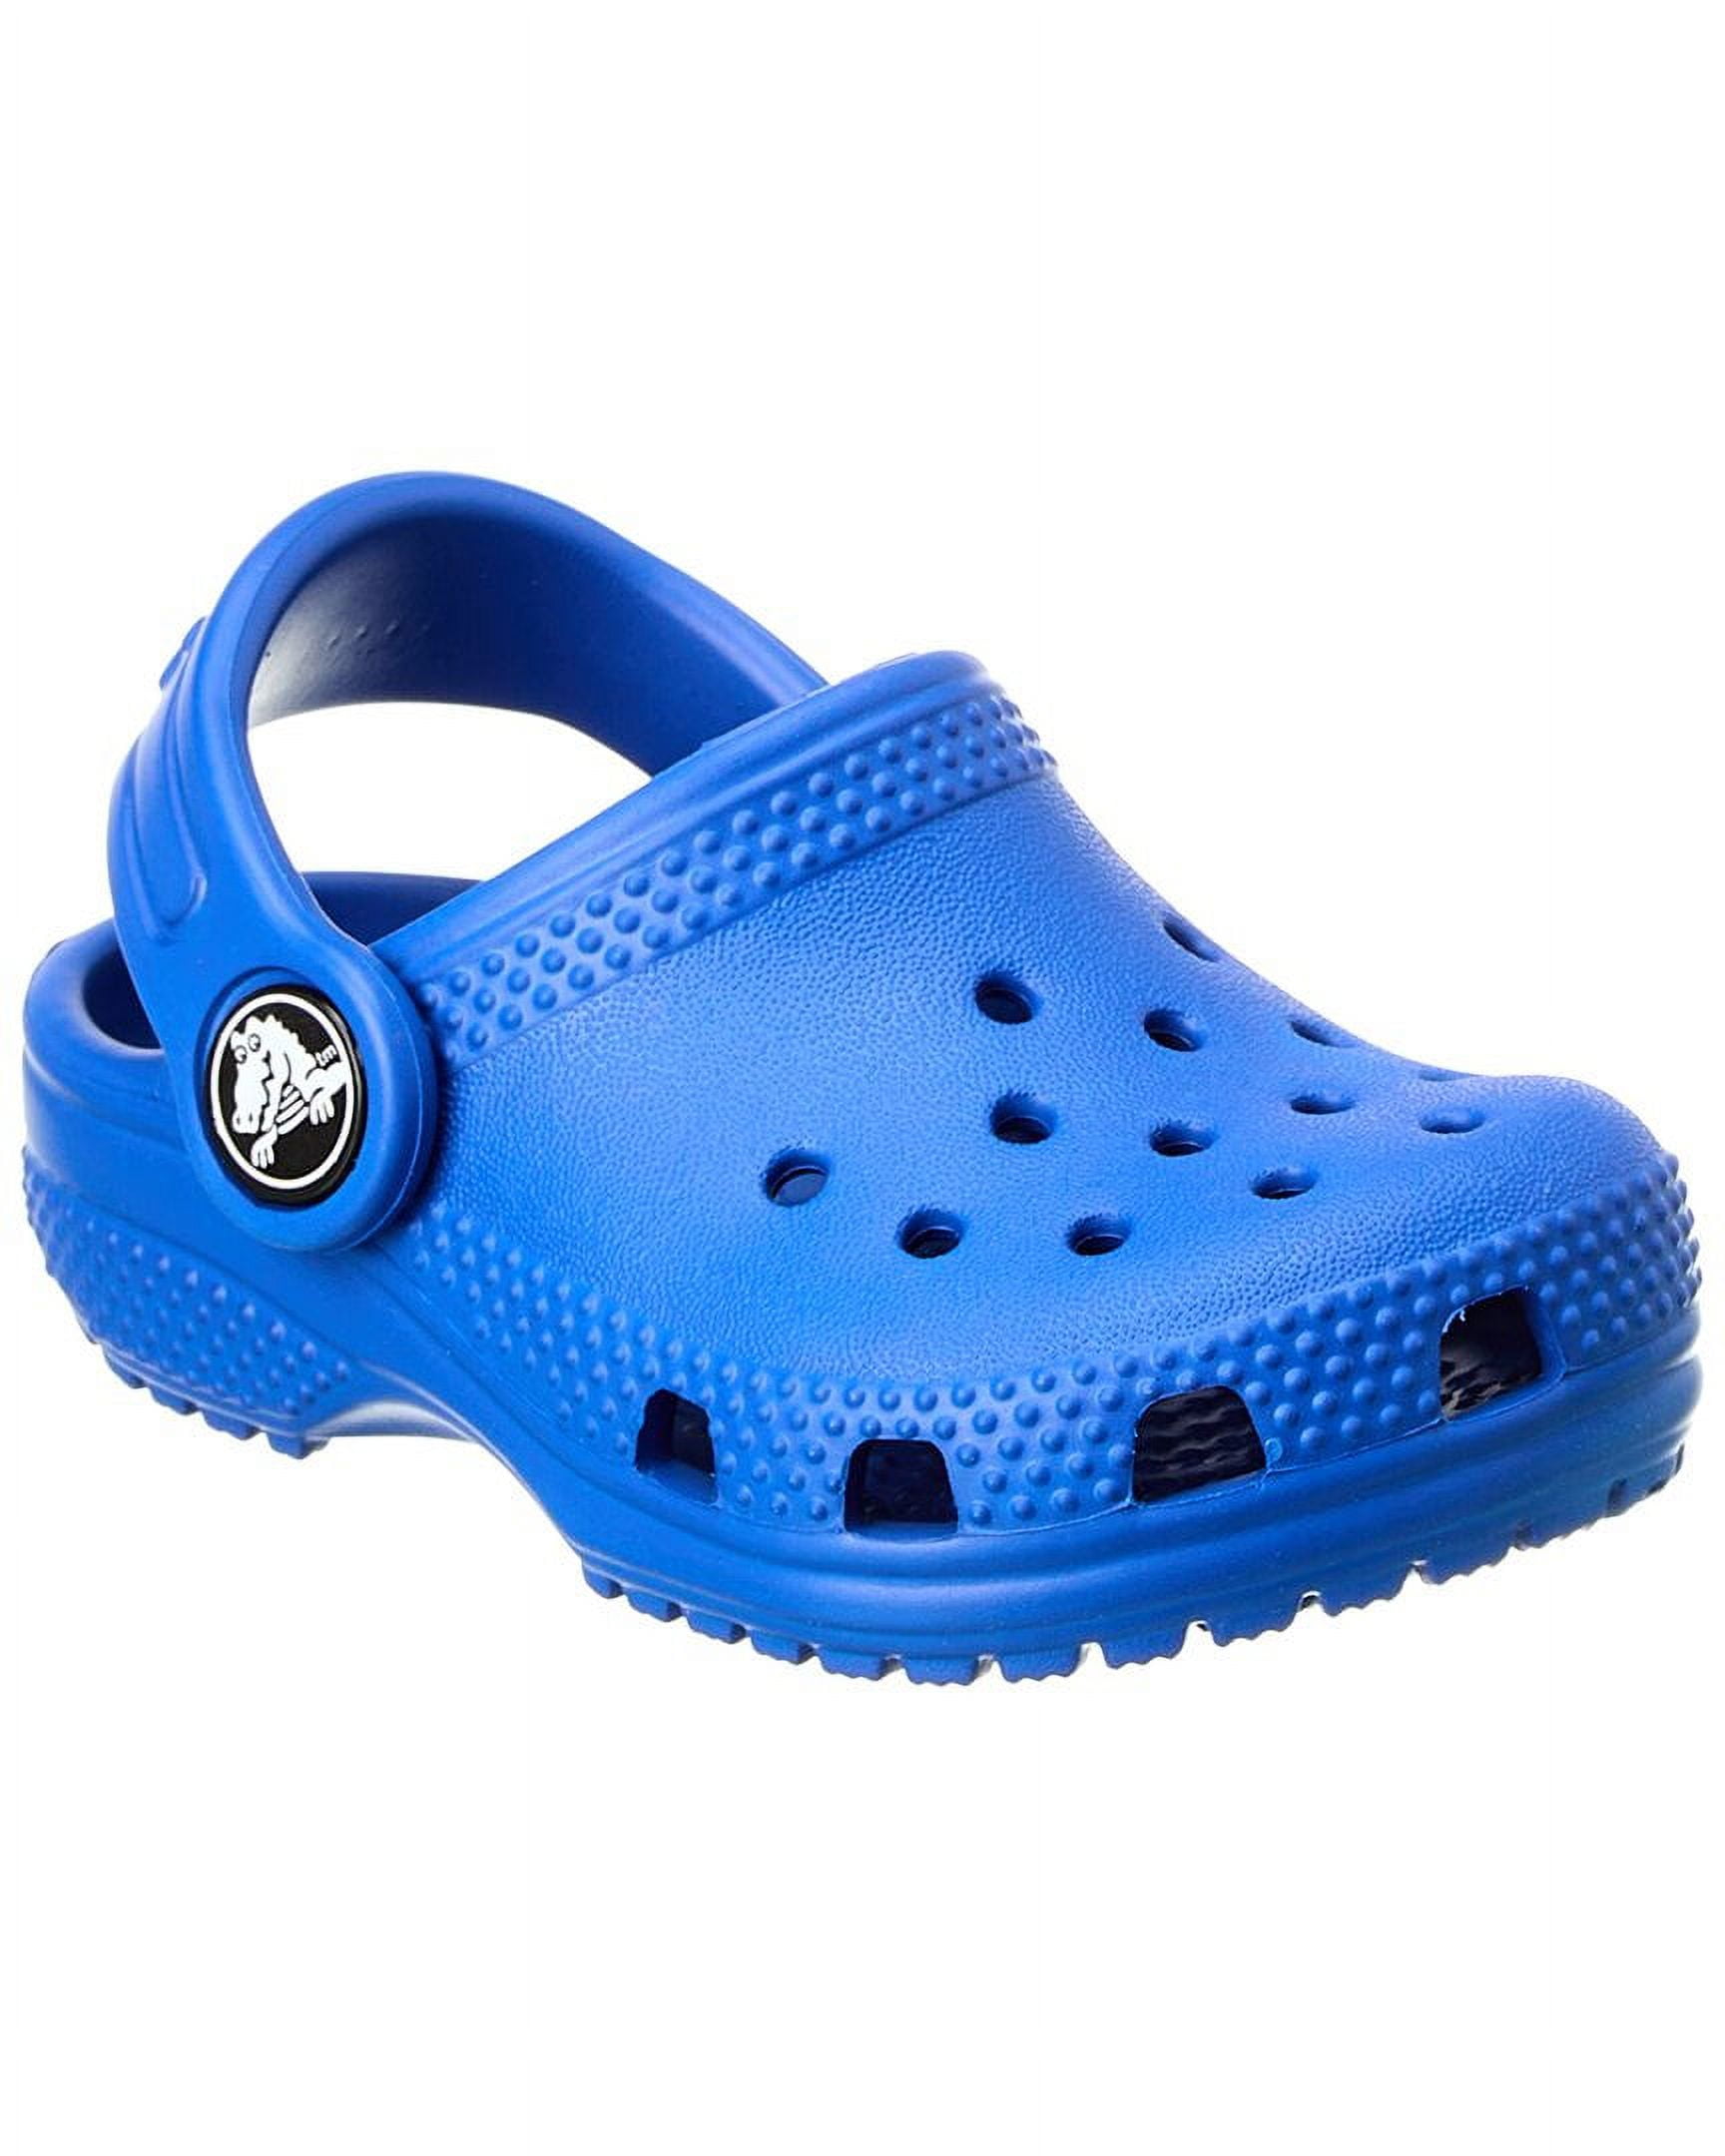 Crocs Classic Clog, C5, Blue - Walmart.com